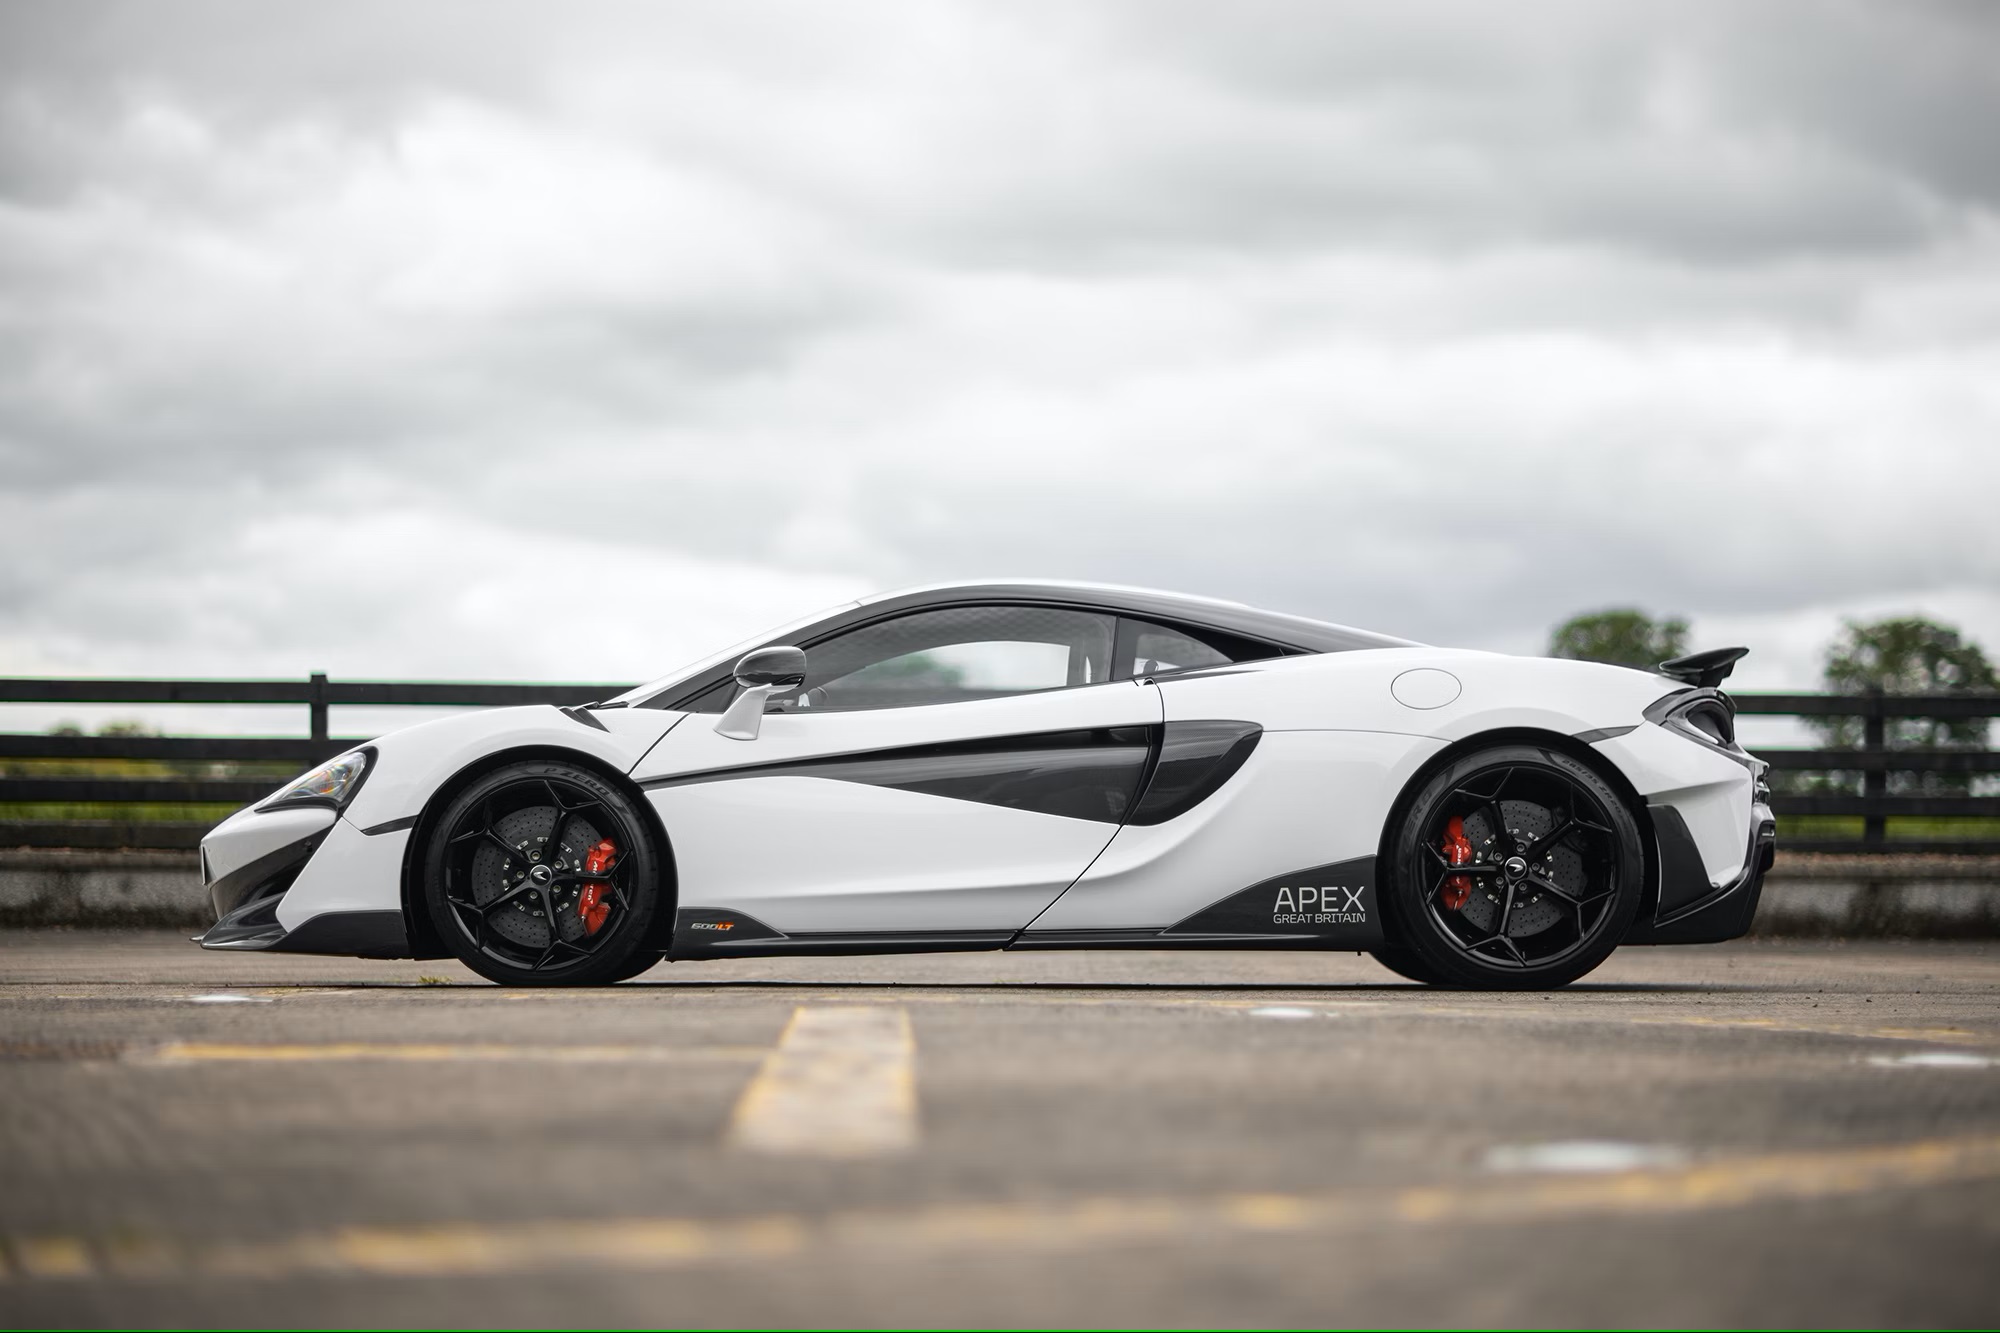 2020 McLaren 600LT Apex Edition